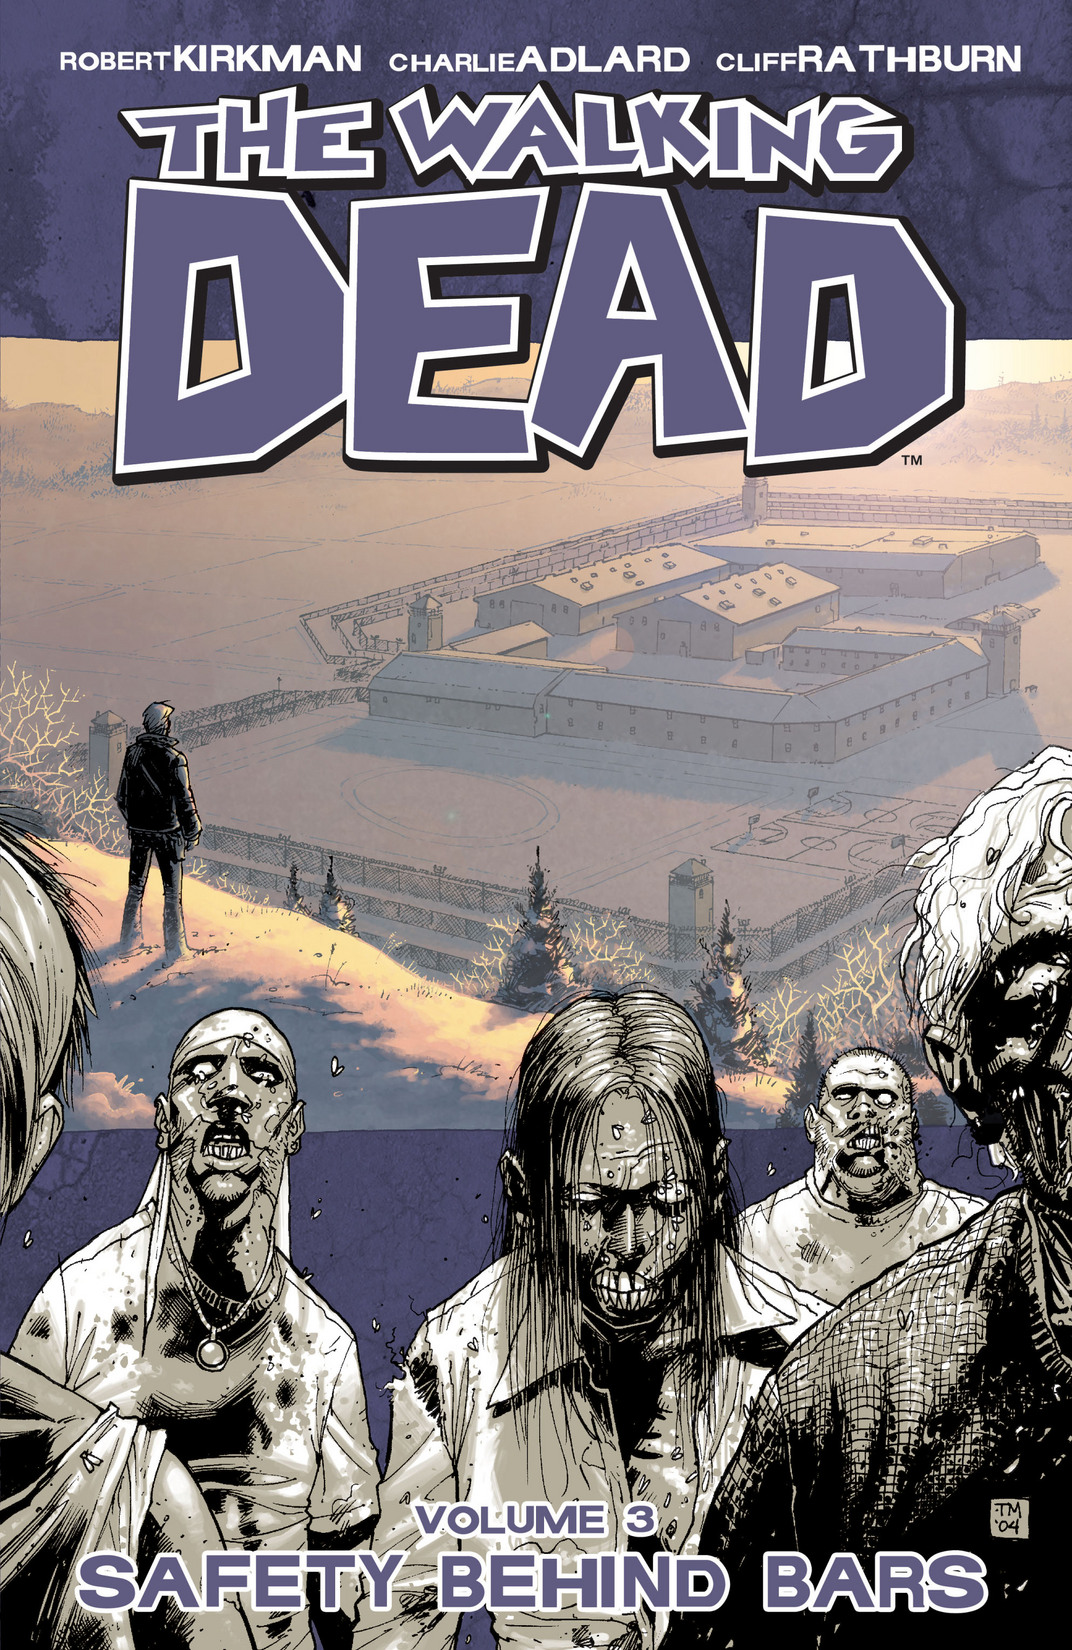 The Walking Dead, Vol 1: Days Gone Bye by Robert Kirkman